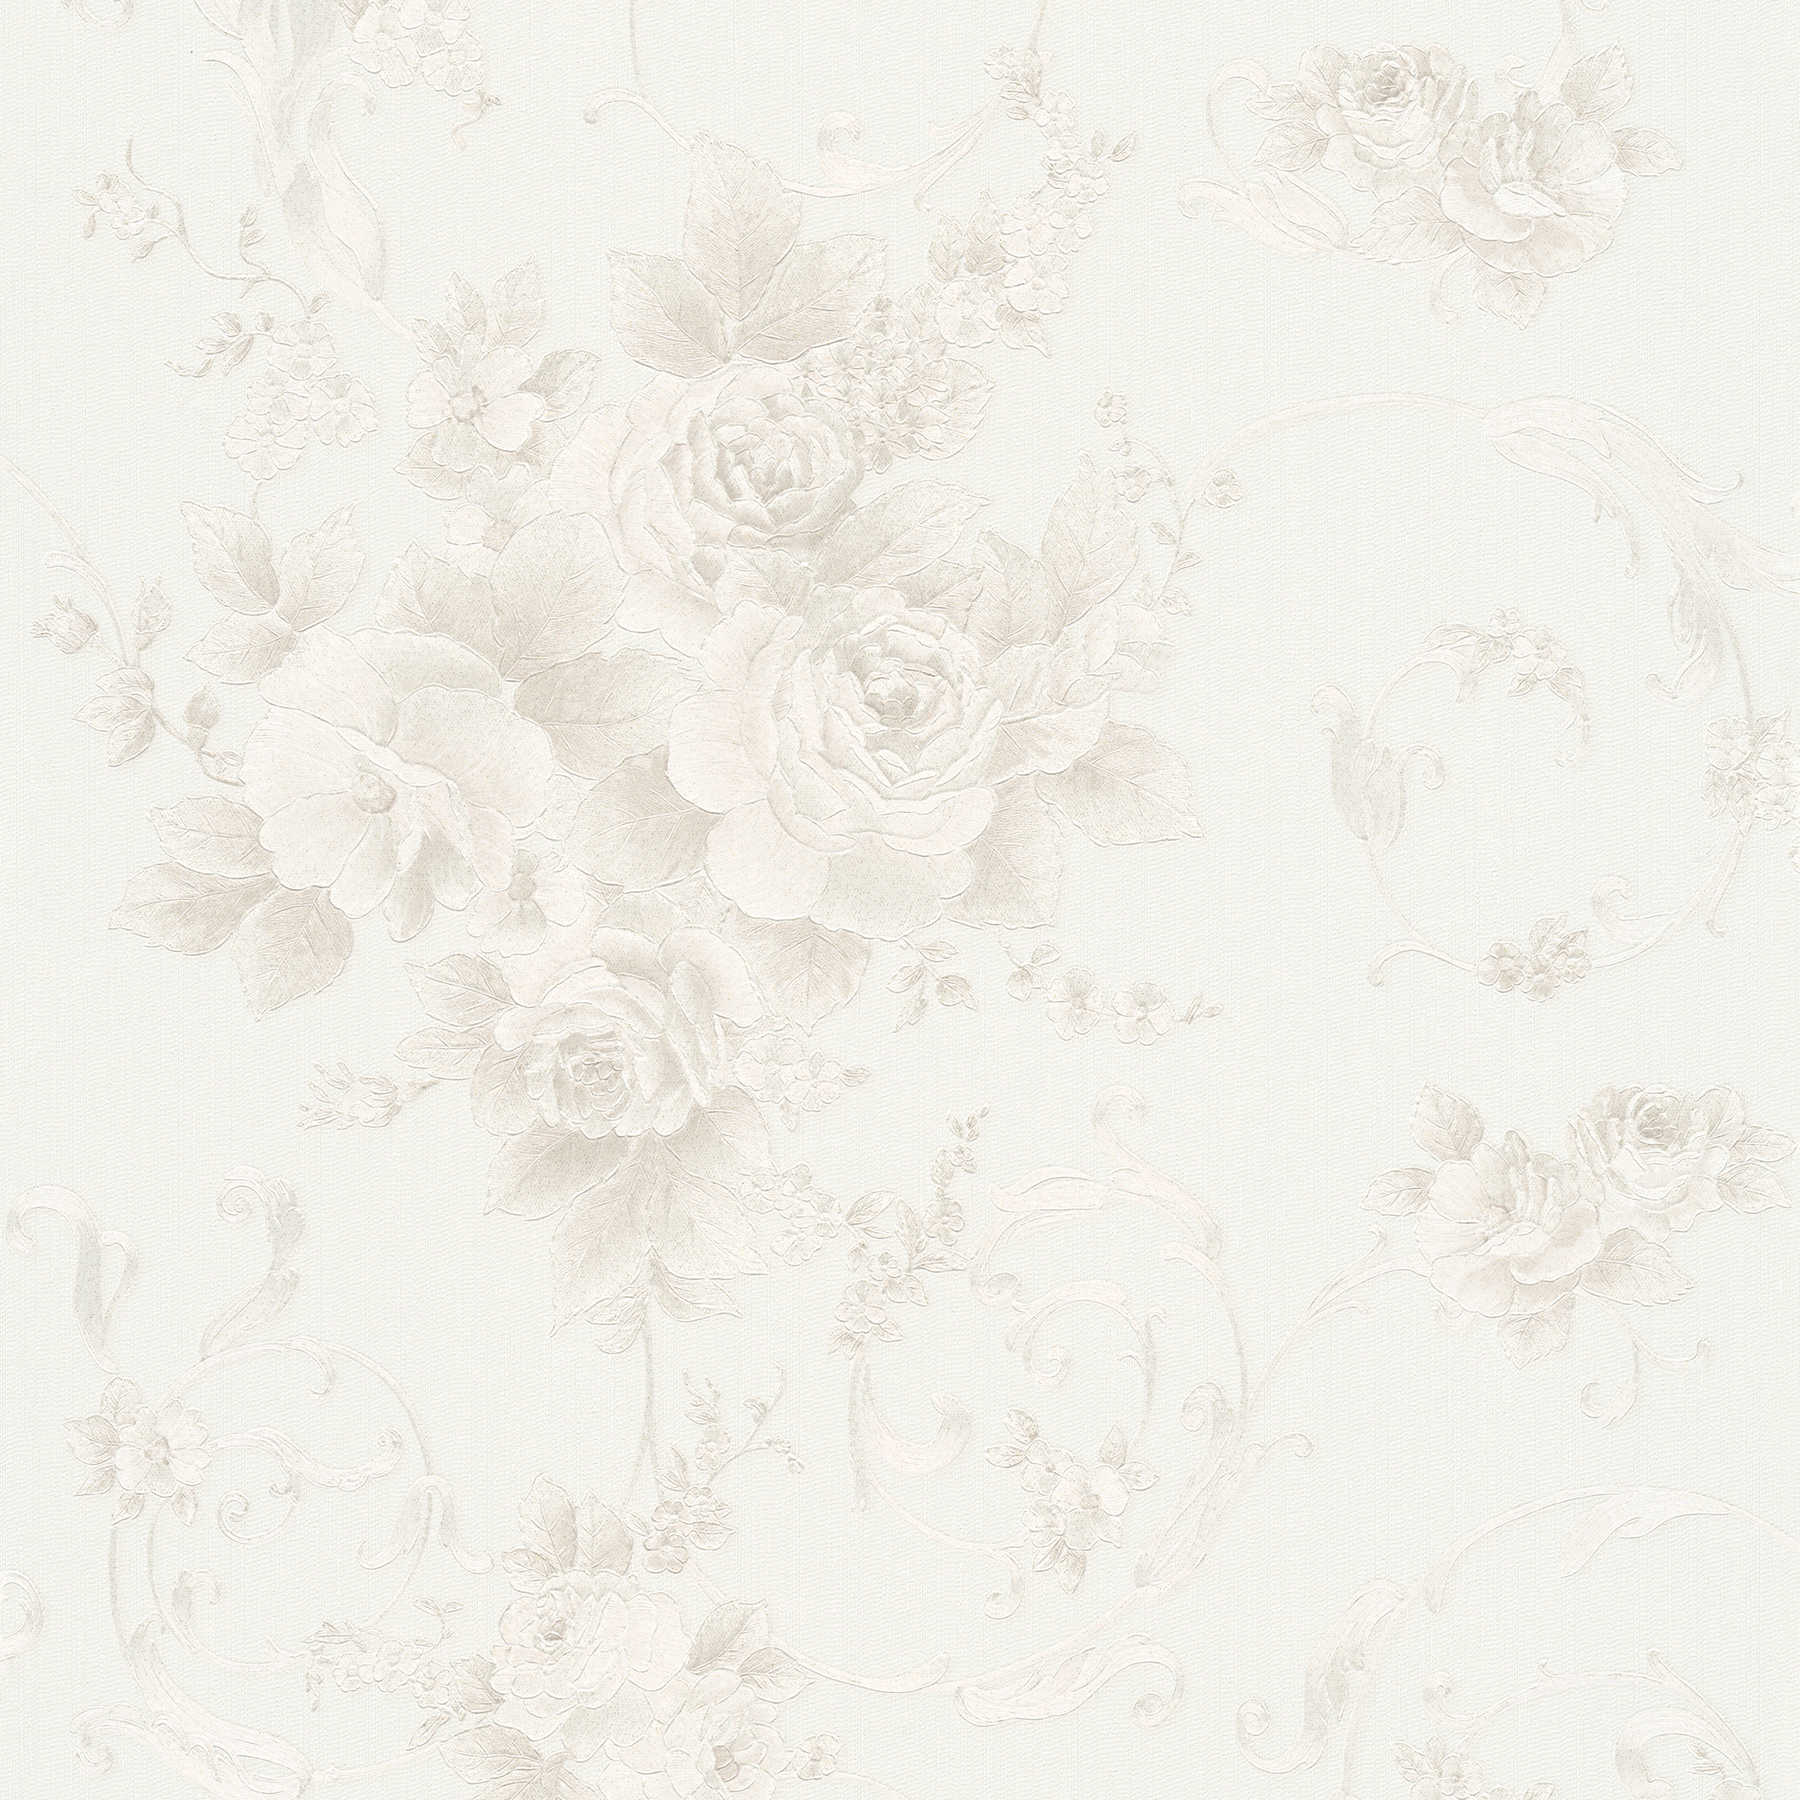         Rosenblüten-Tapete mit Metallic-Effekt im Landhausstil – Grau, Bronze, Weiß
    